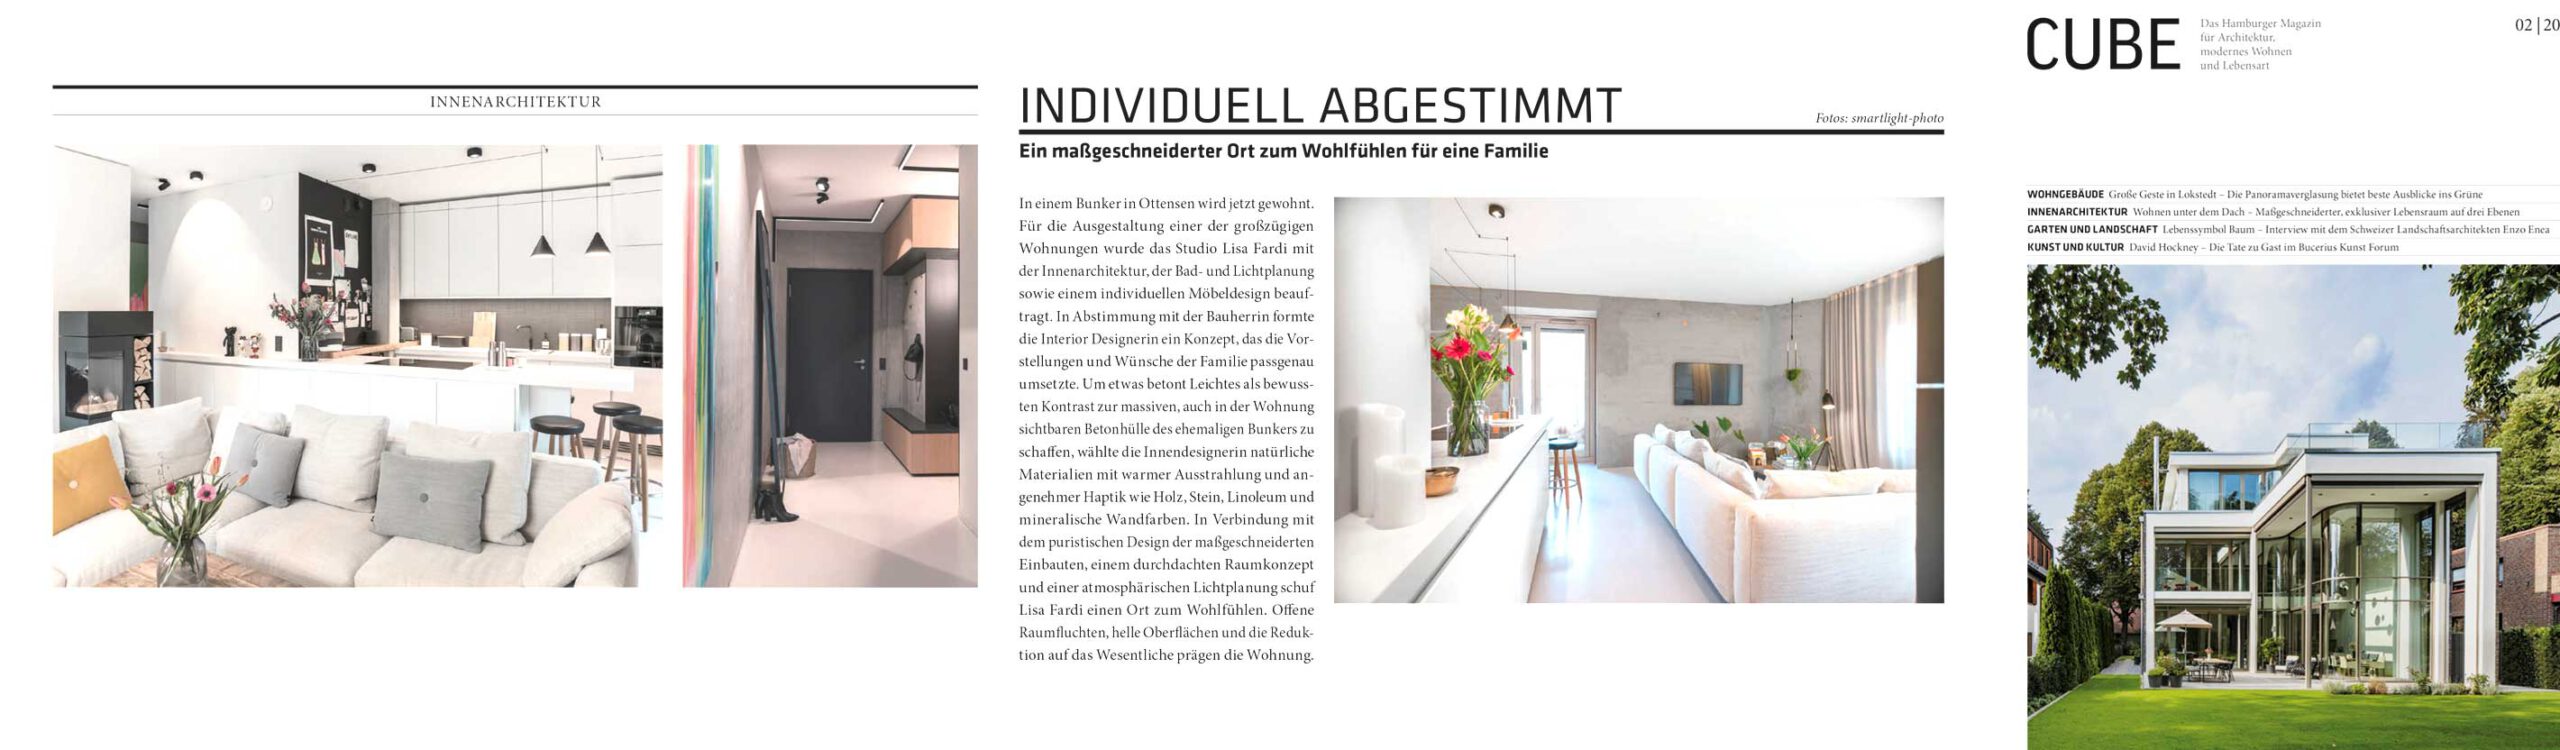 Artikel INDIVIDUELL ABGESTIMMT im Cube Magazin über die Innenarchitektur von Lisa Fardi